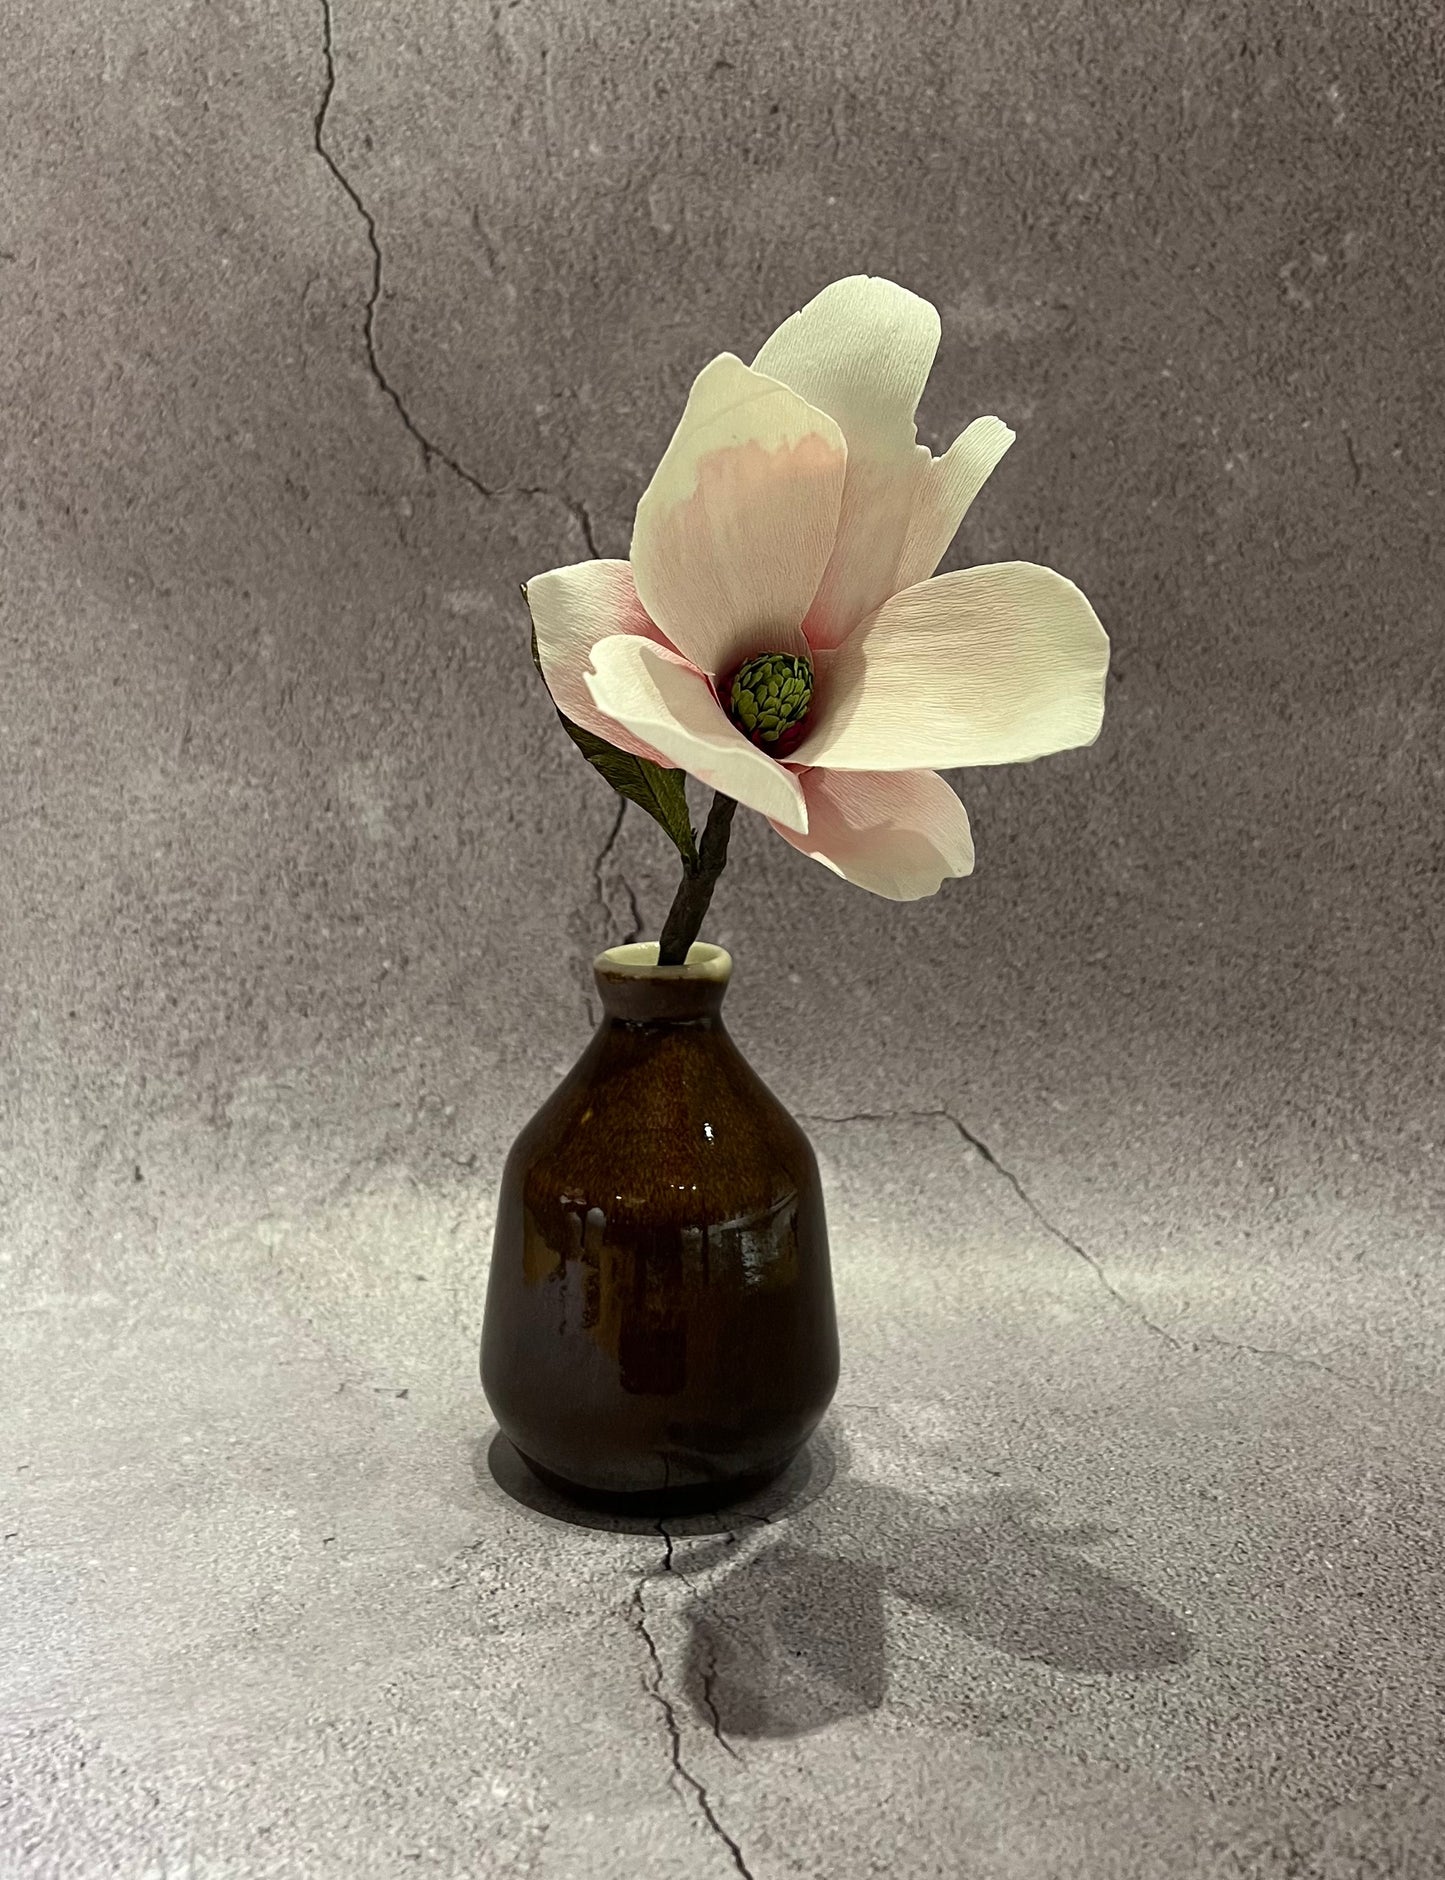 Magnolia in vase